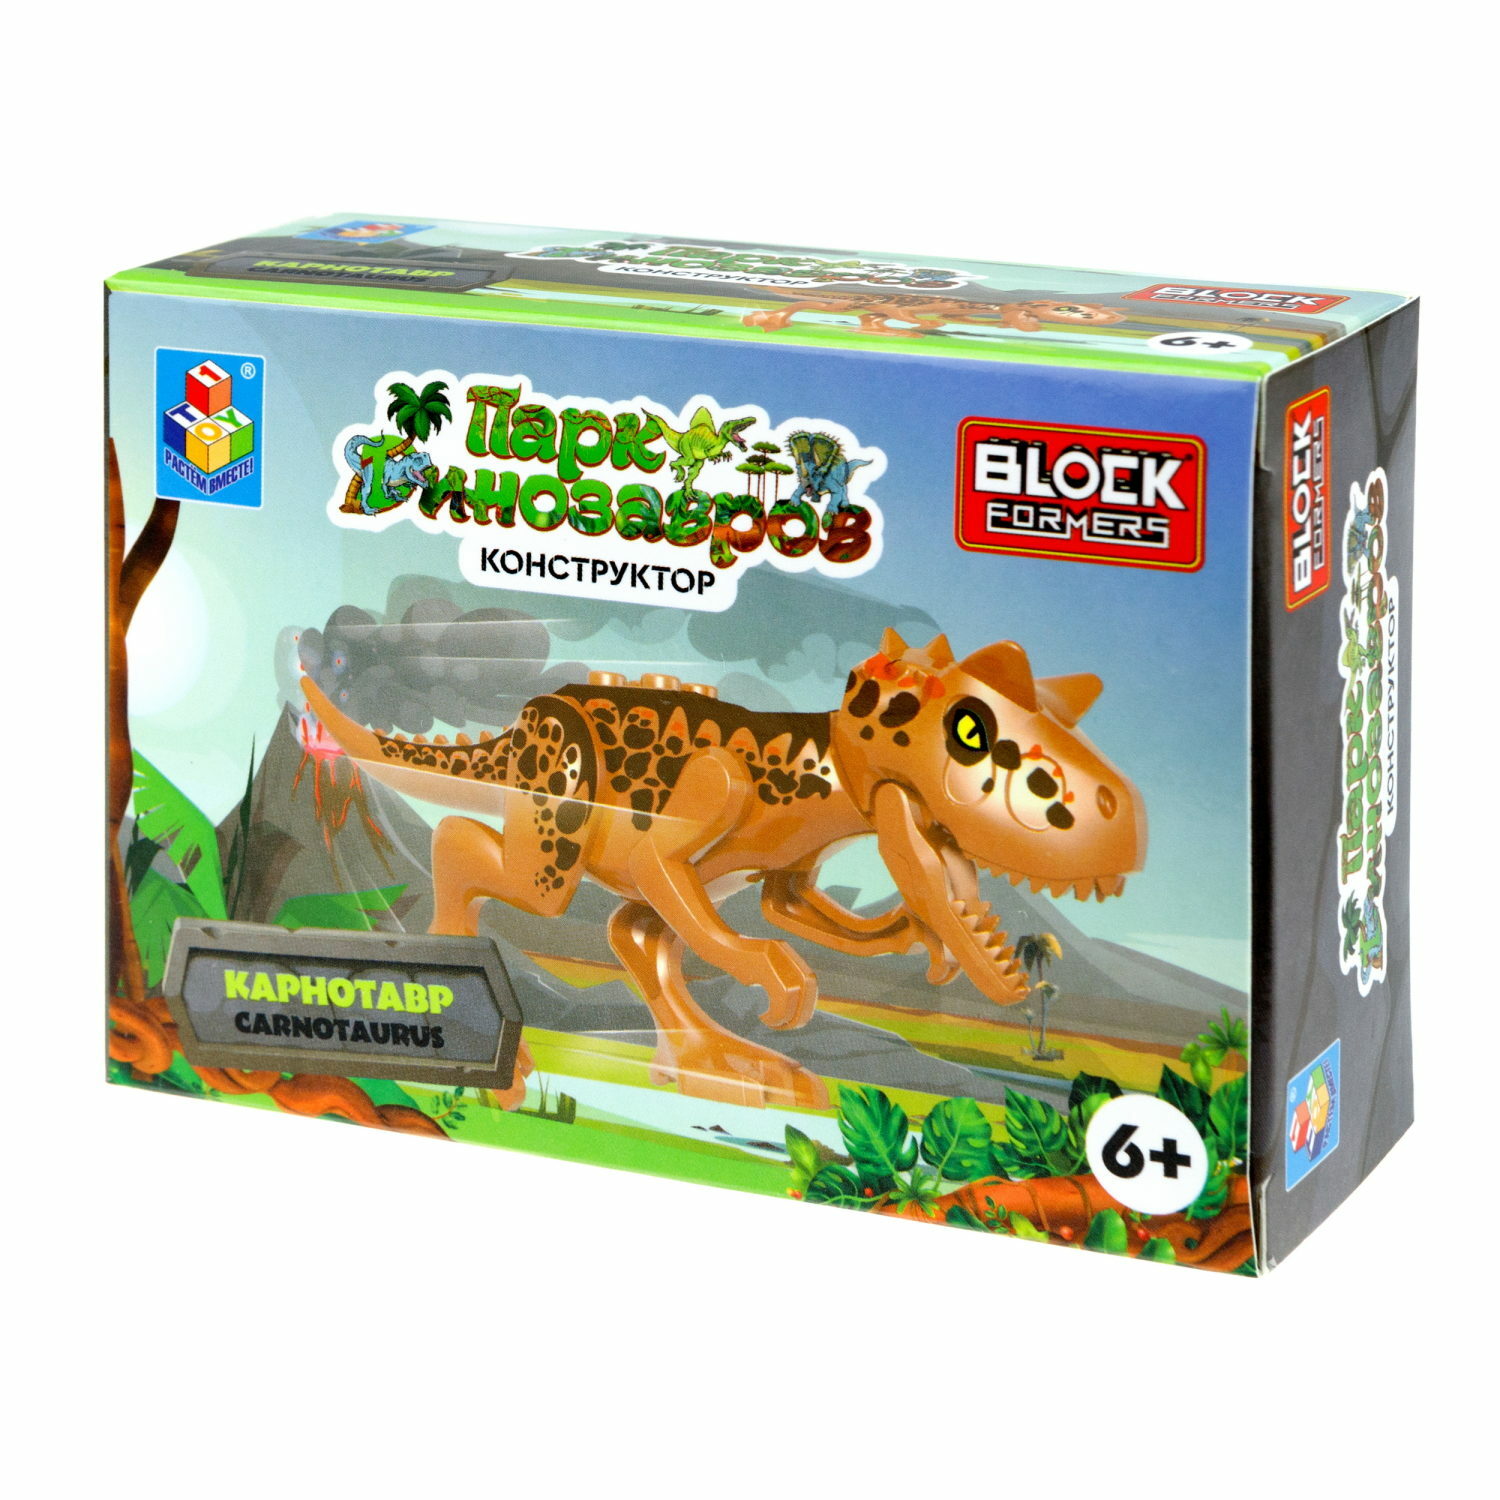 Игрушка сборная Blockformers 1Toy Парк динозавров Карнотавр Т23229-3 - фото 10